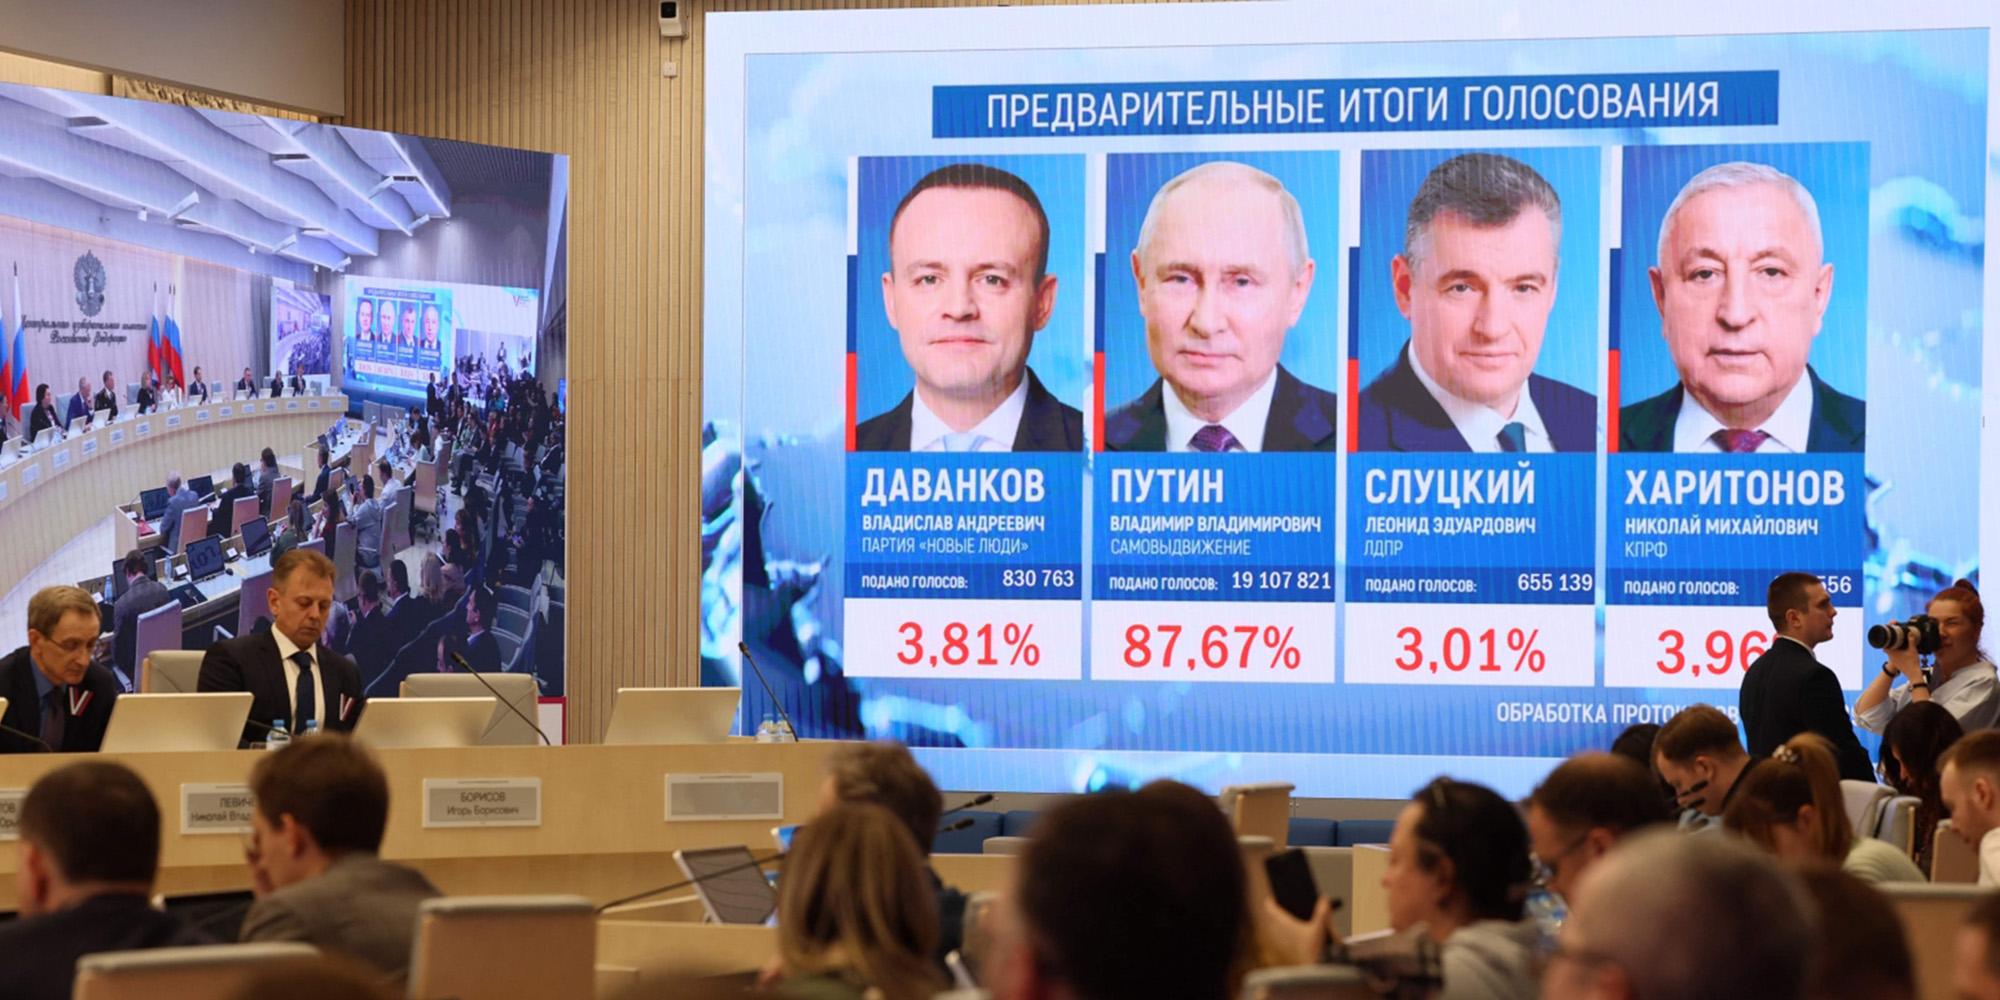 ما دلالات نتائج الانتخابات الرئاسية الروسية؟